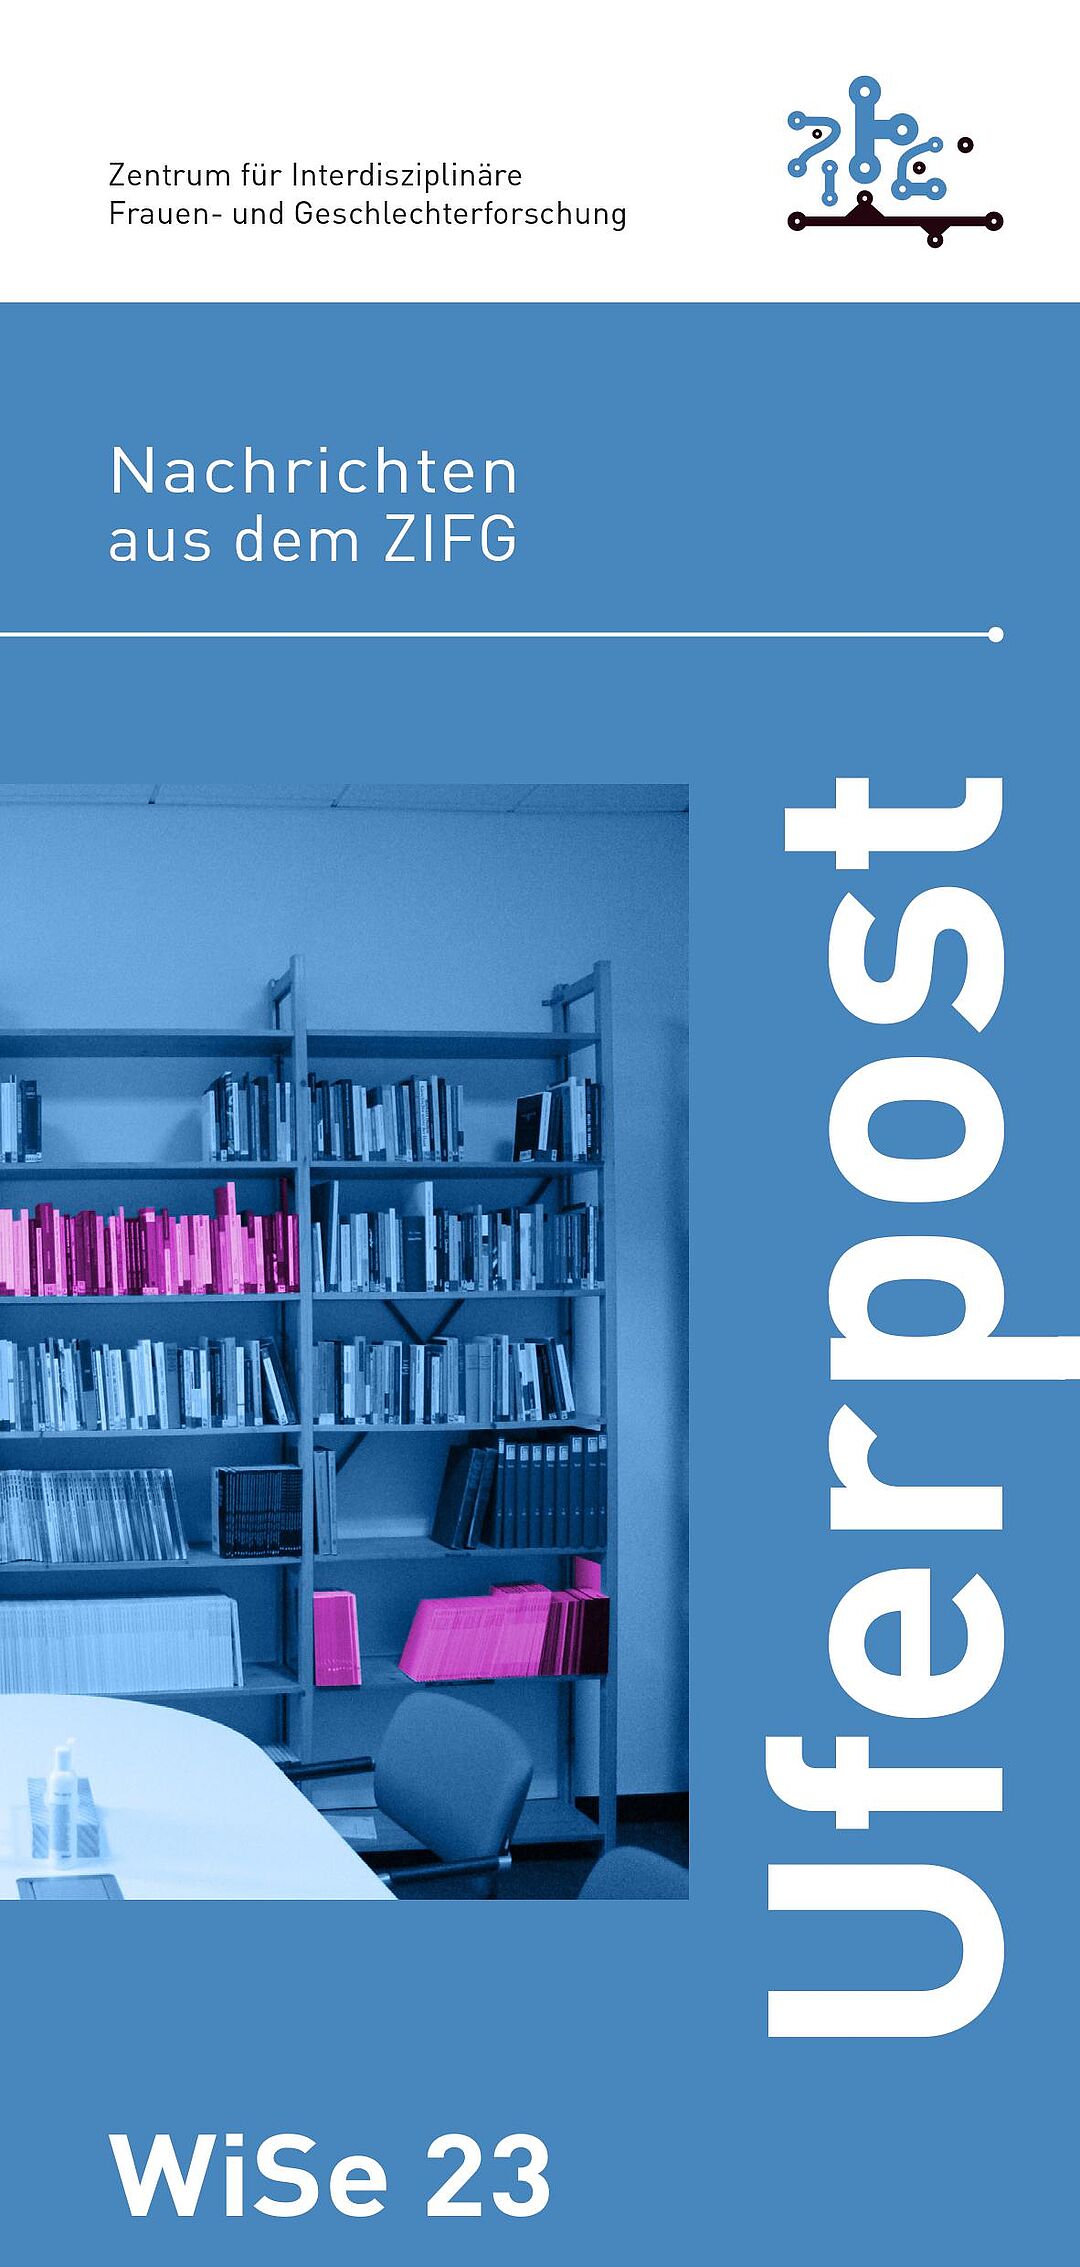 Cover der Ausgabe der uferpost SoSe23. Ein blau eingefärbtes Foto einer Bibliothek sowie folgende Schriftzüge: Zentrum für Interdisziplinäre Frauen- und Geschlechterforschung; Nachrichten aus dem ZIFG; uferpost; WiSe23. Ein Teil der Bücher ist pink hervorgehoben.